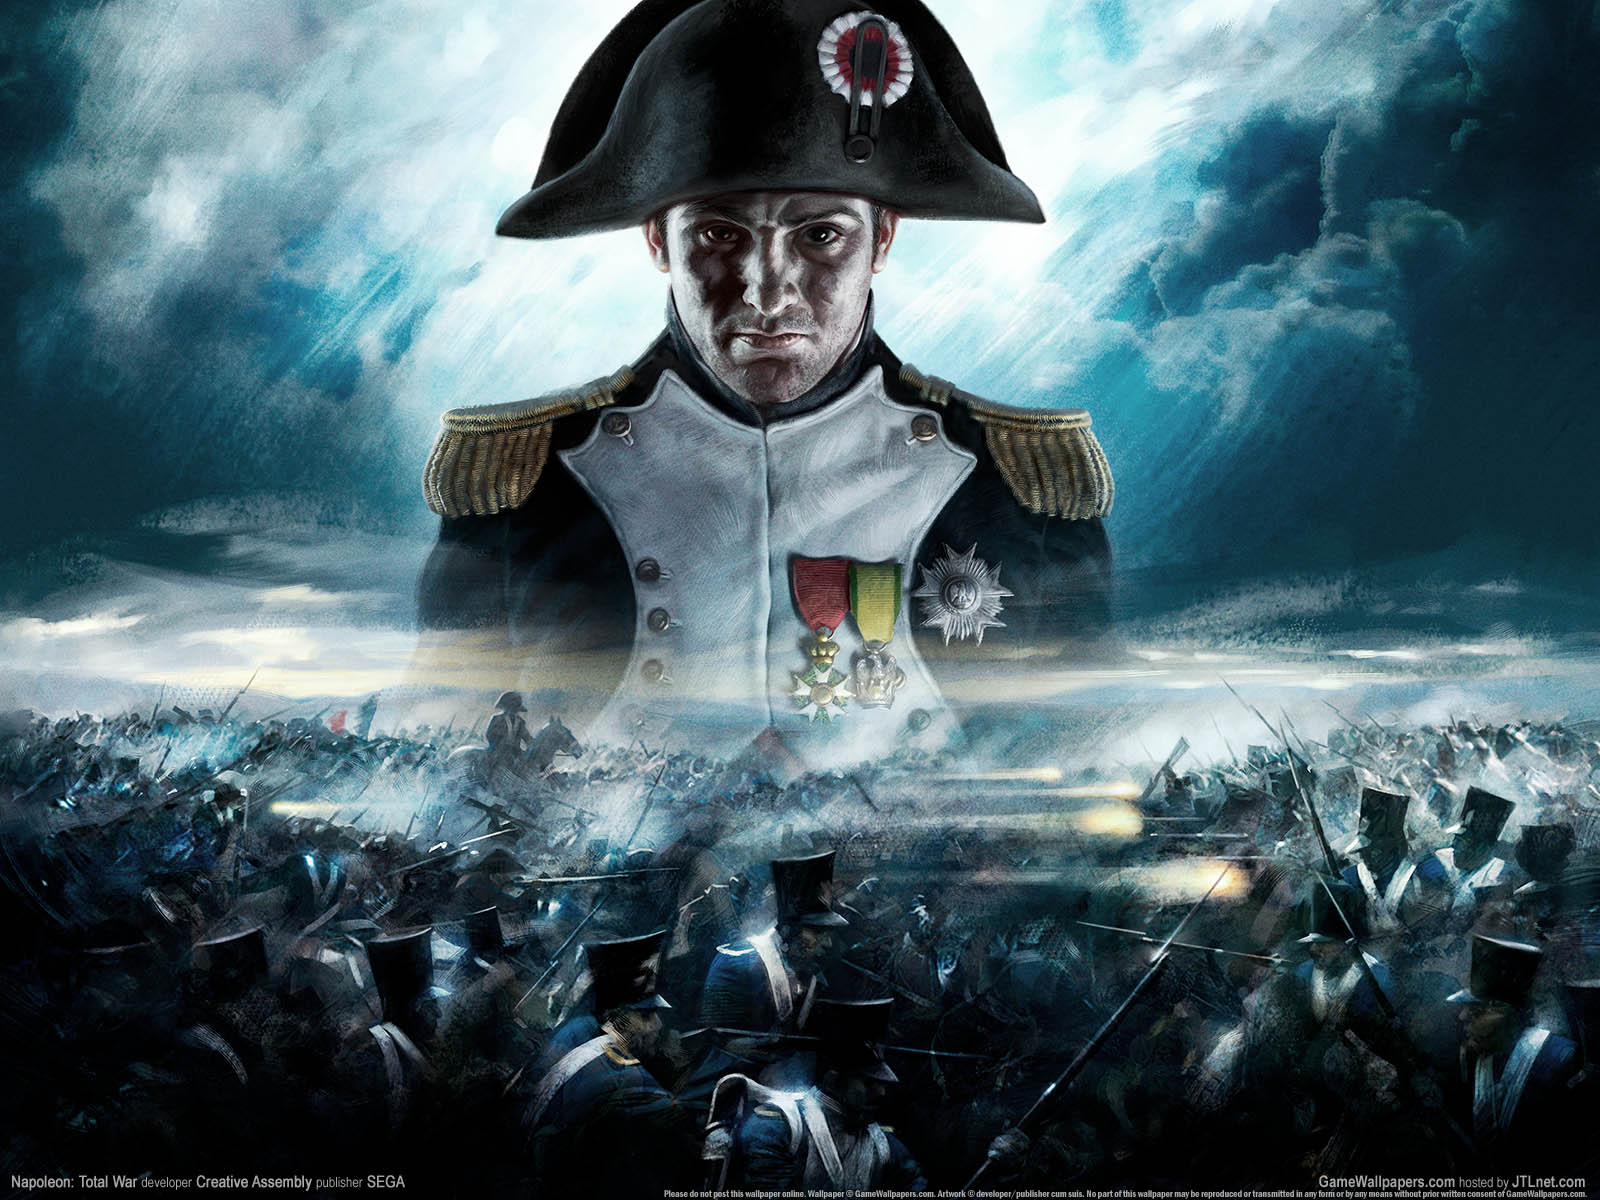 Napoleon: Total War fond d'cran 01 1600x1200